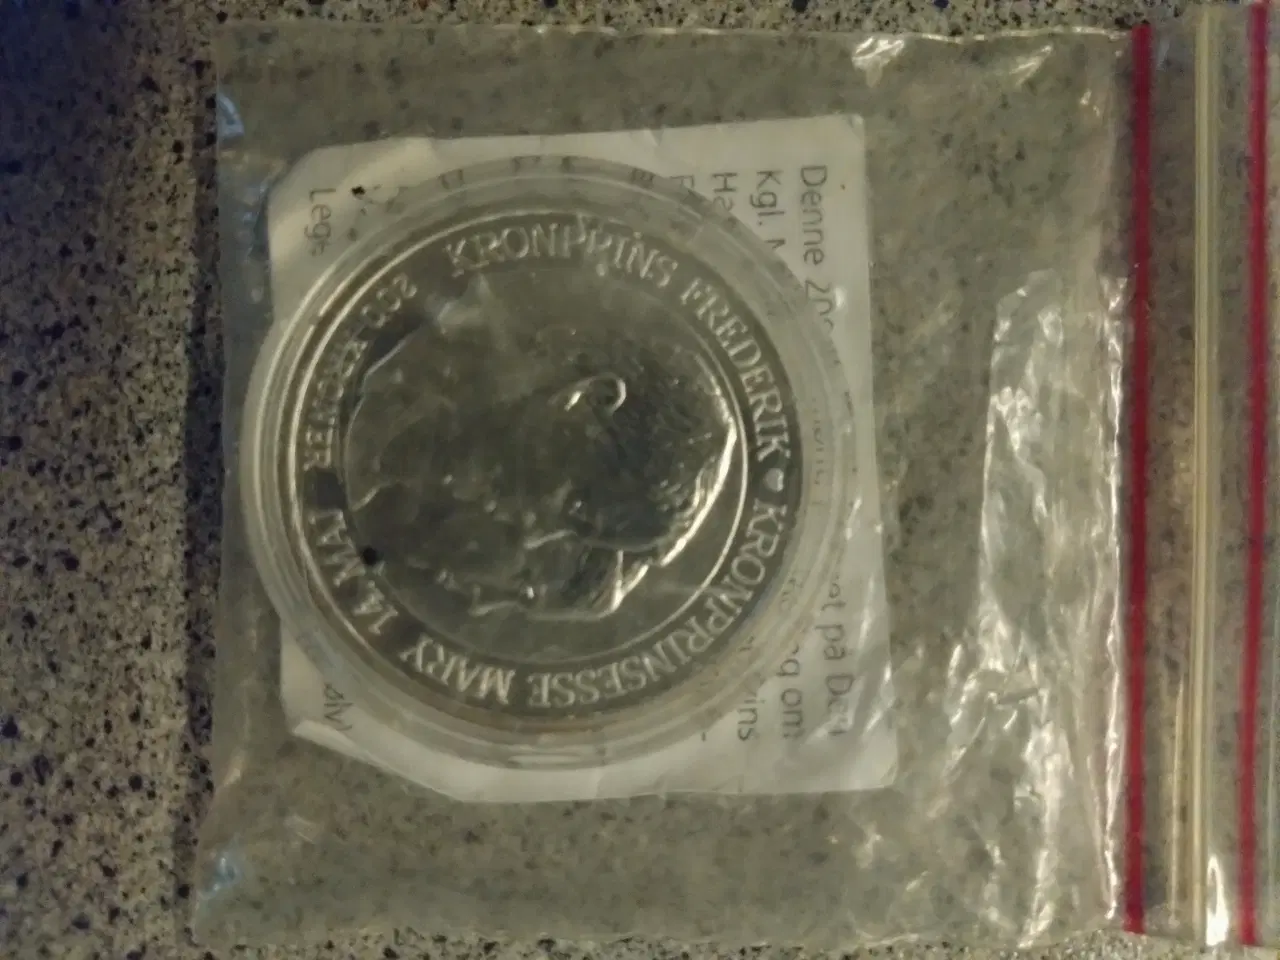 Billede 1 - Mønt, kronprinsen bryllupsmønt 2004